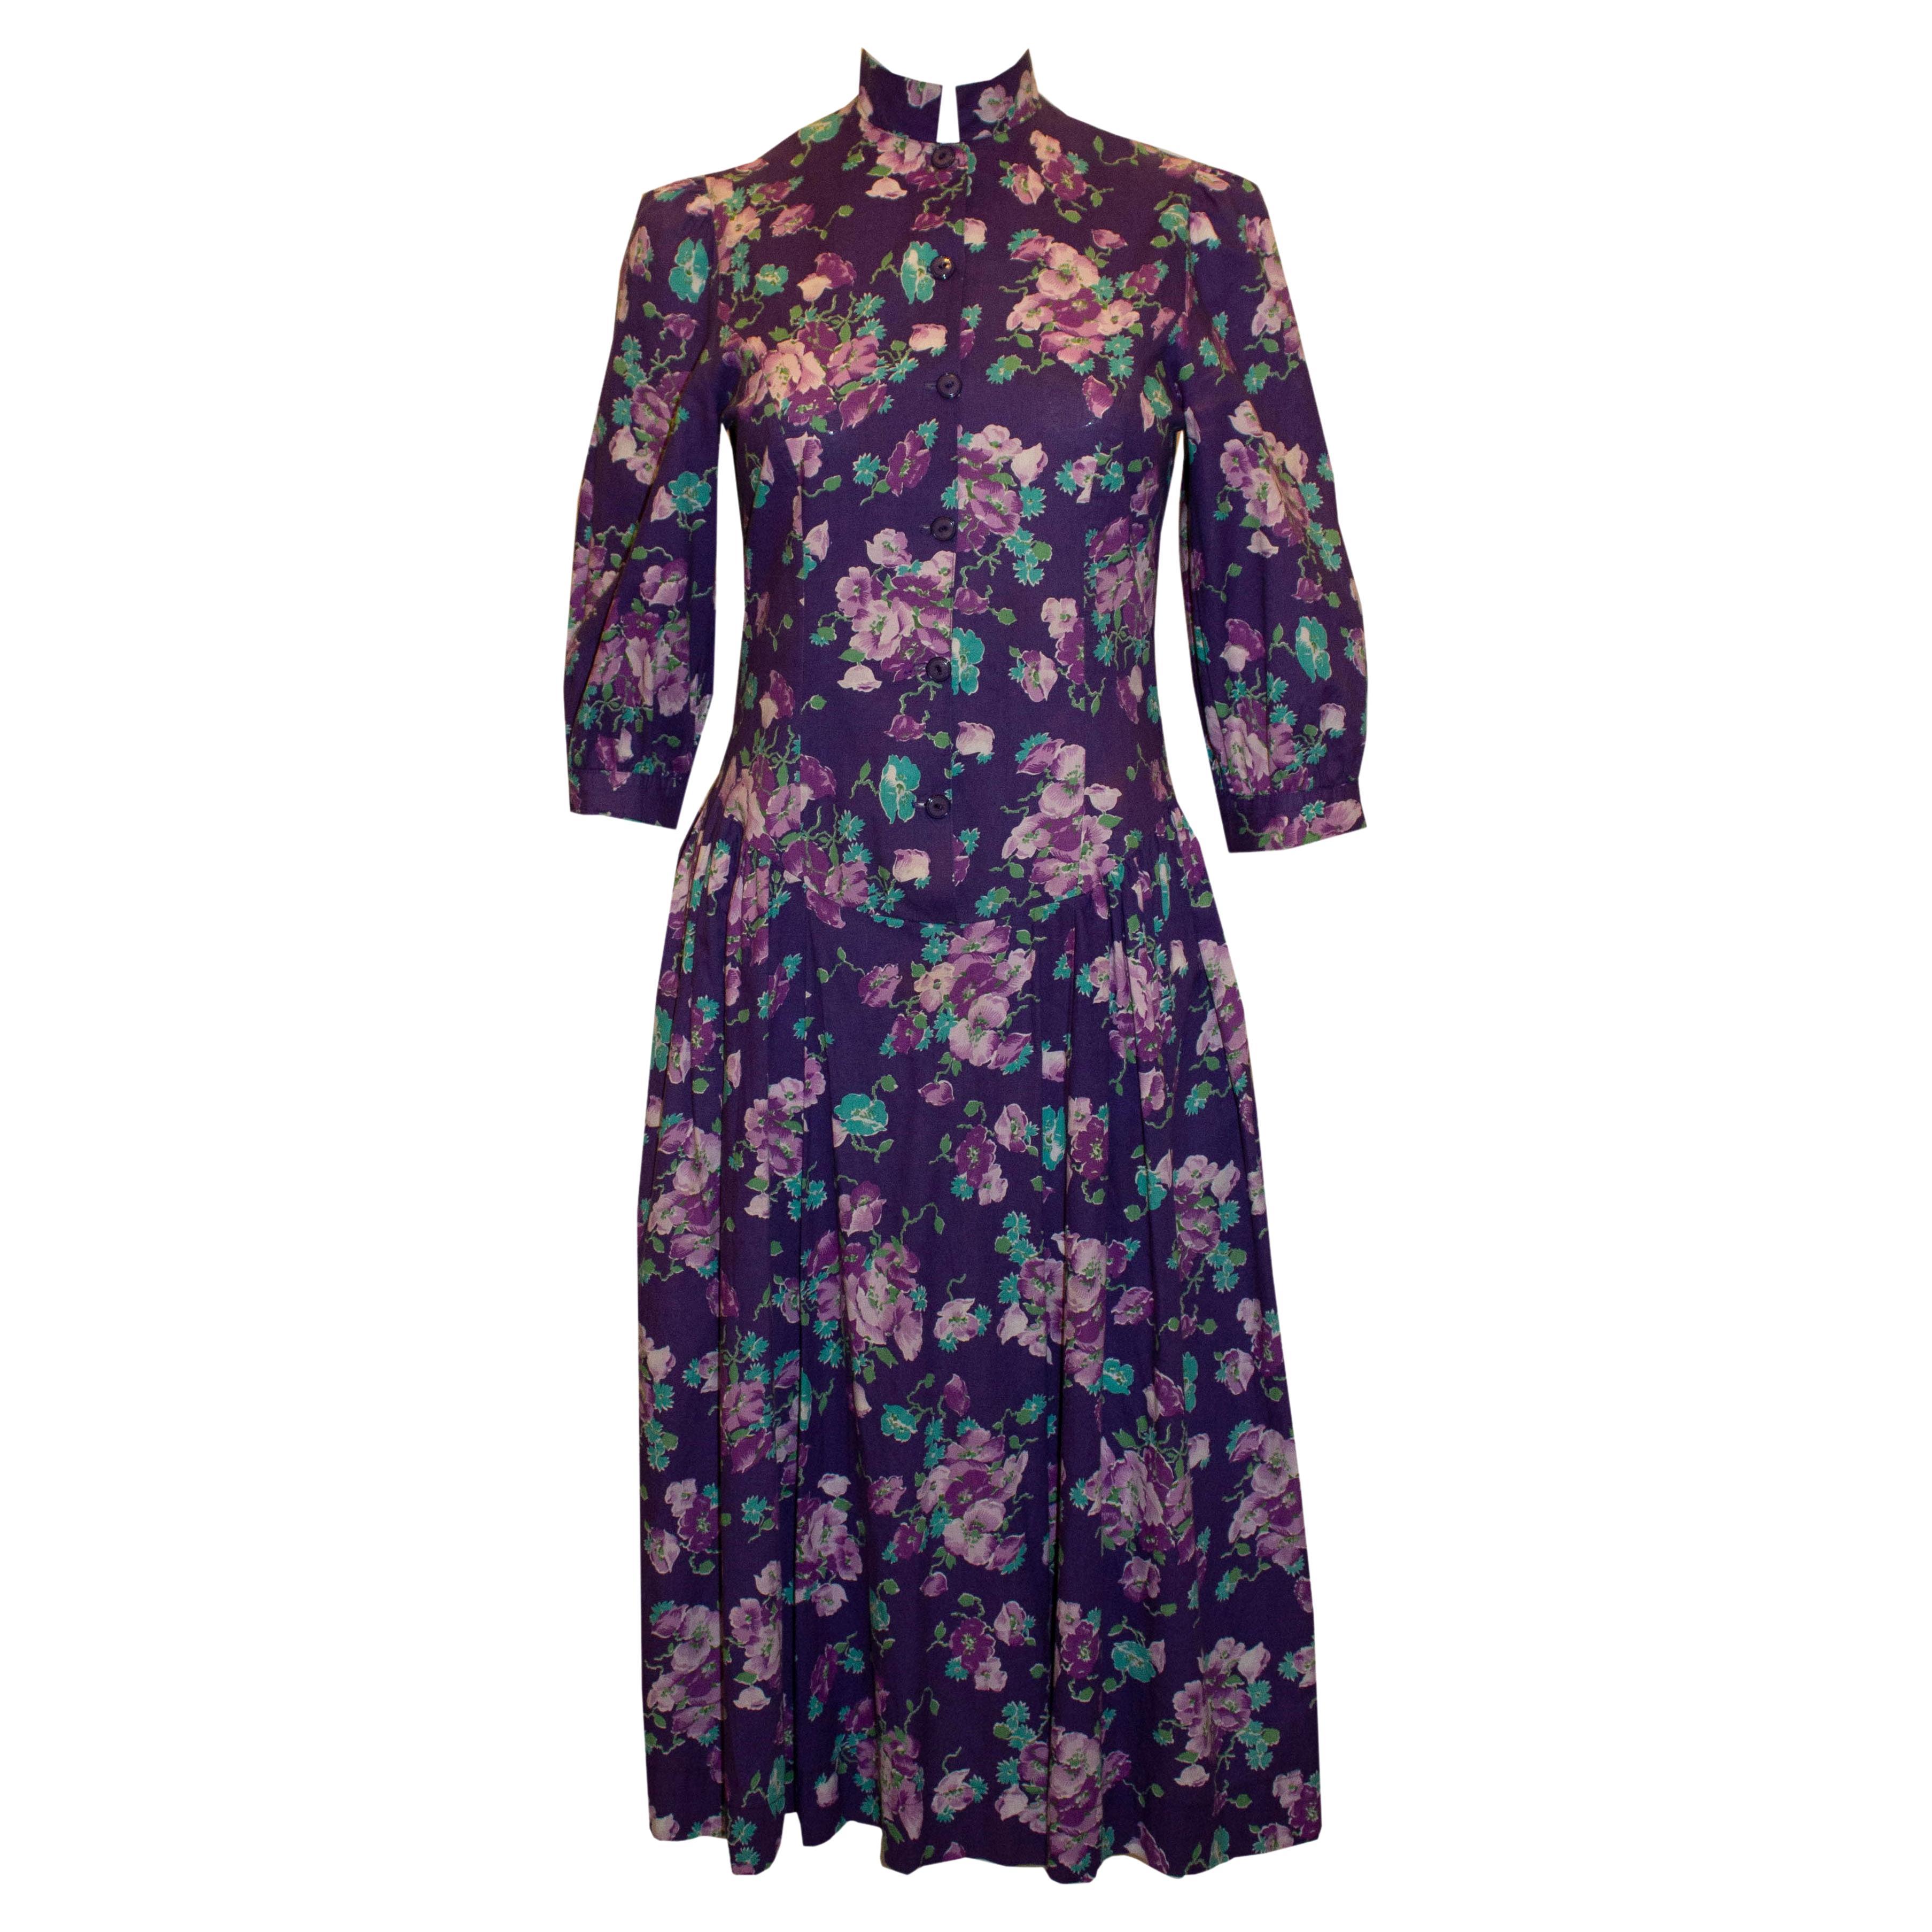 Vintage Laura Ashley Floral Cotton Dress